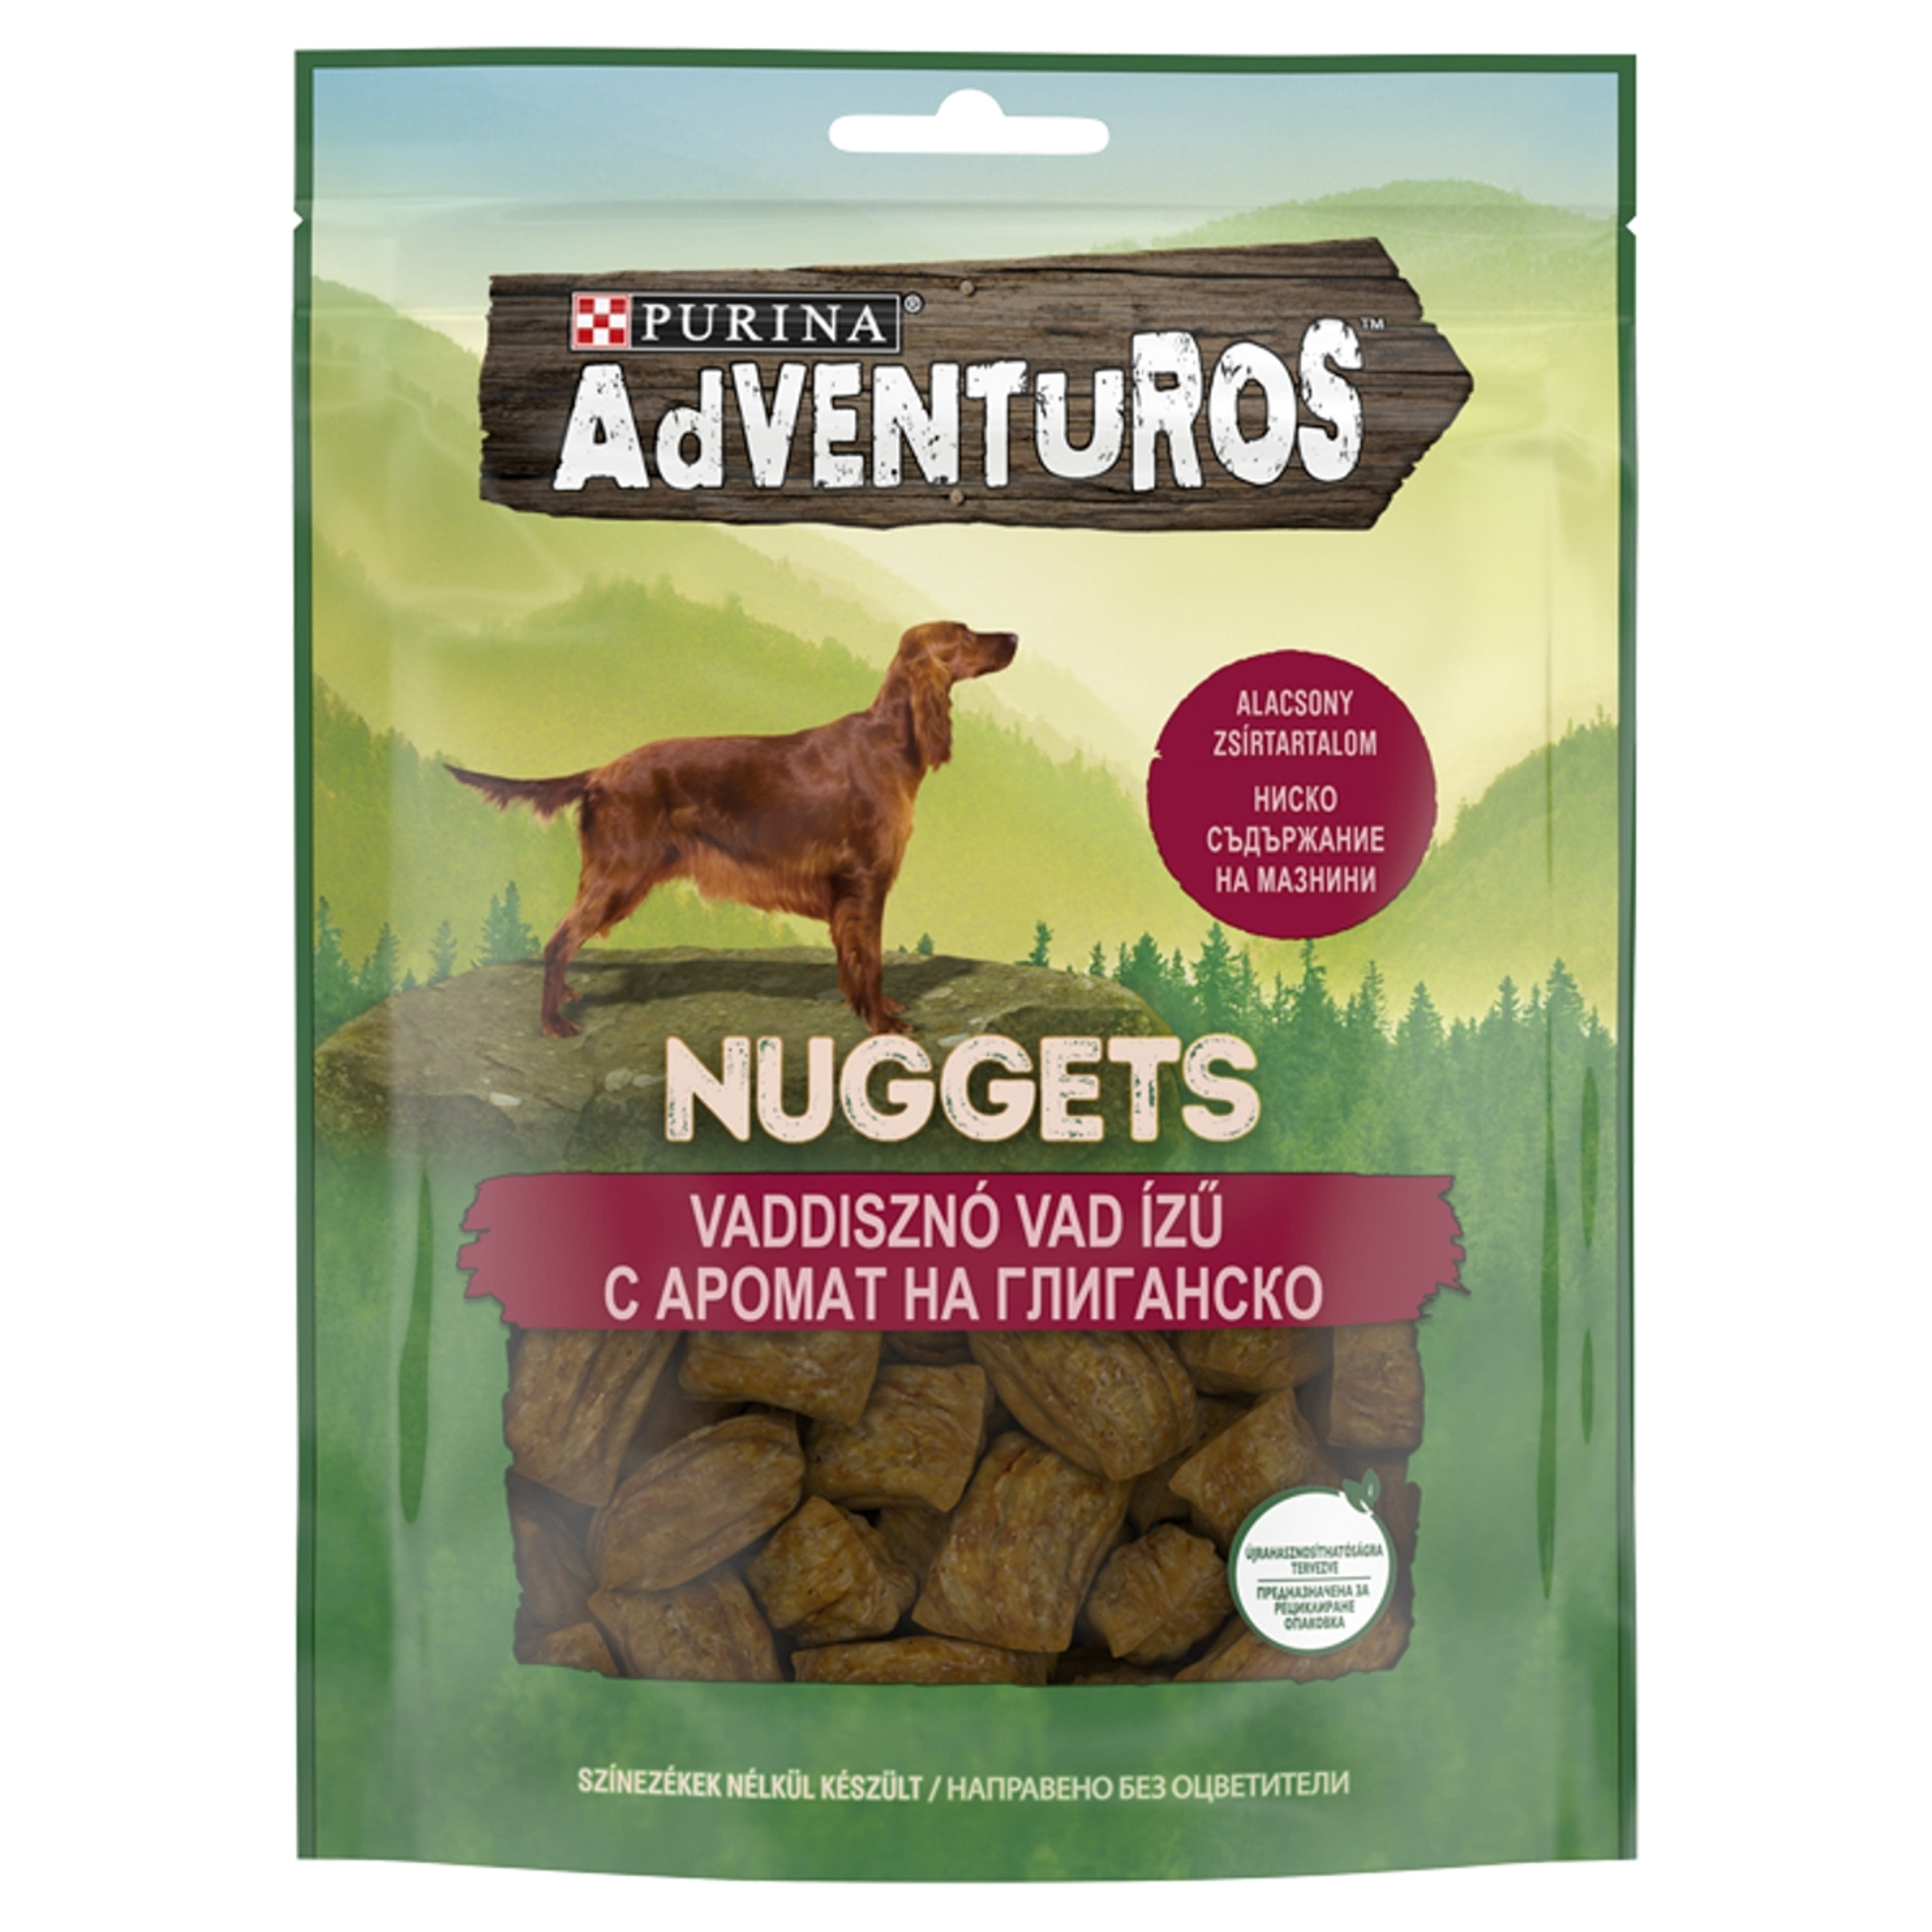 Purina Adventuros Nuggets jutalomfalat kutyáknak, vaddisznó, vad ízű - 90 g-1